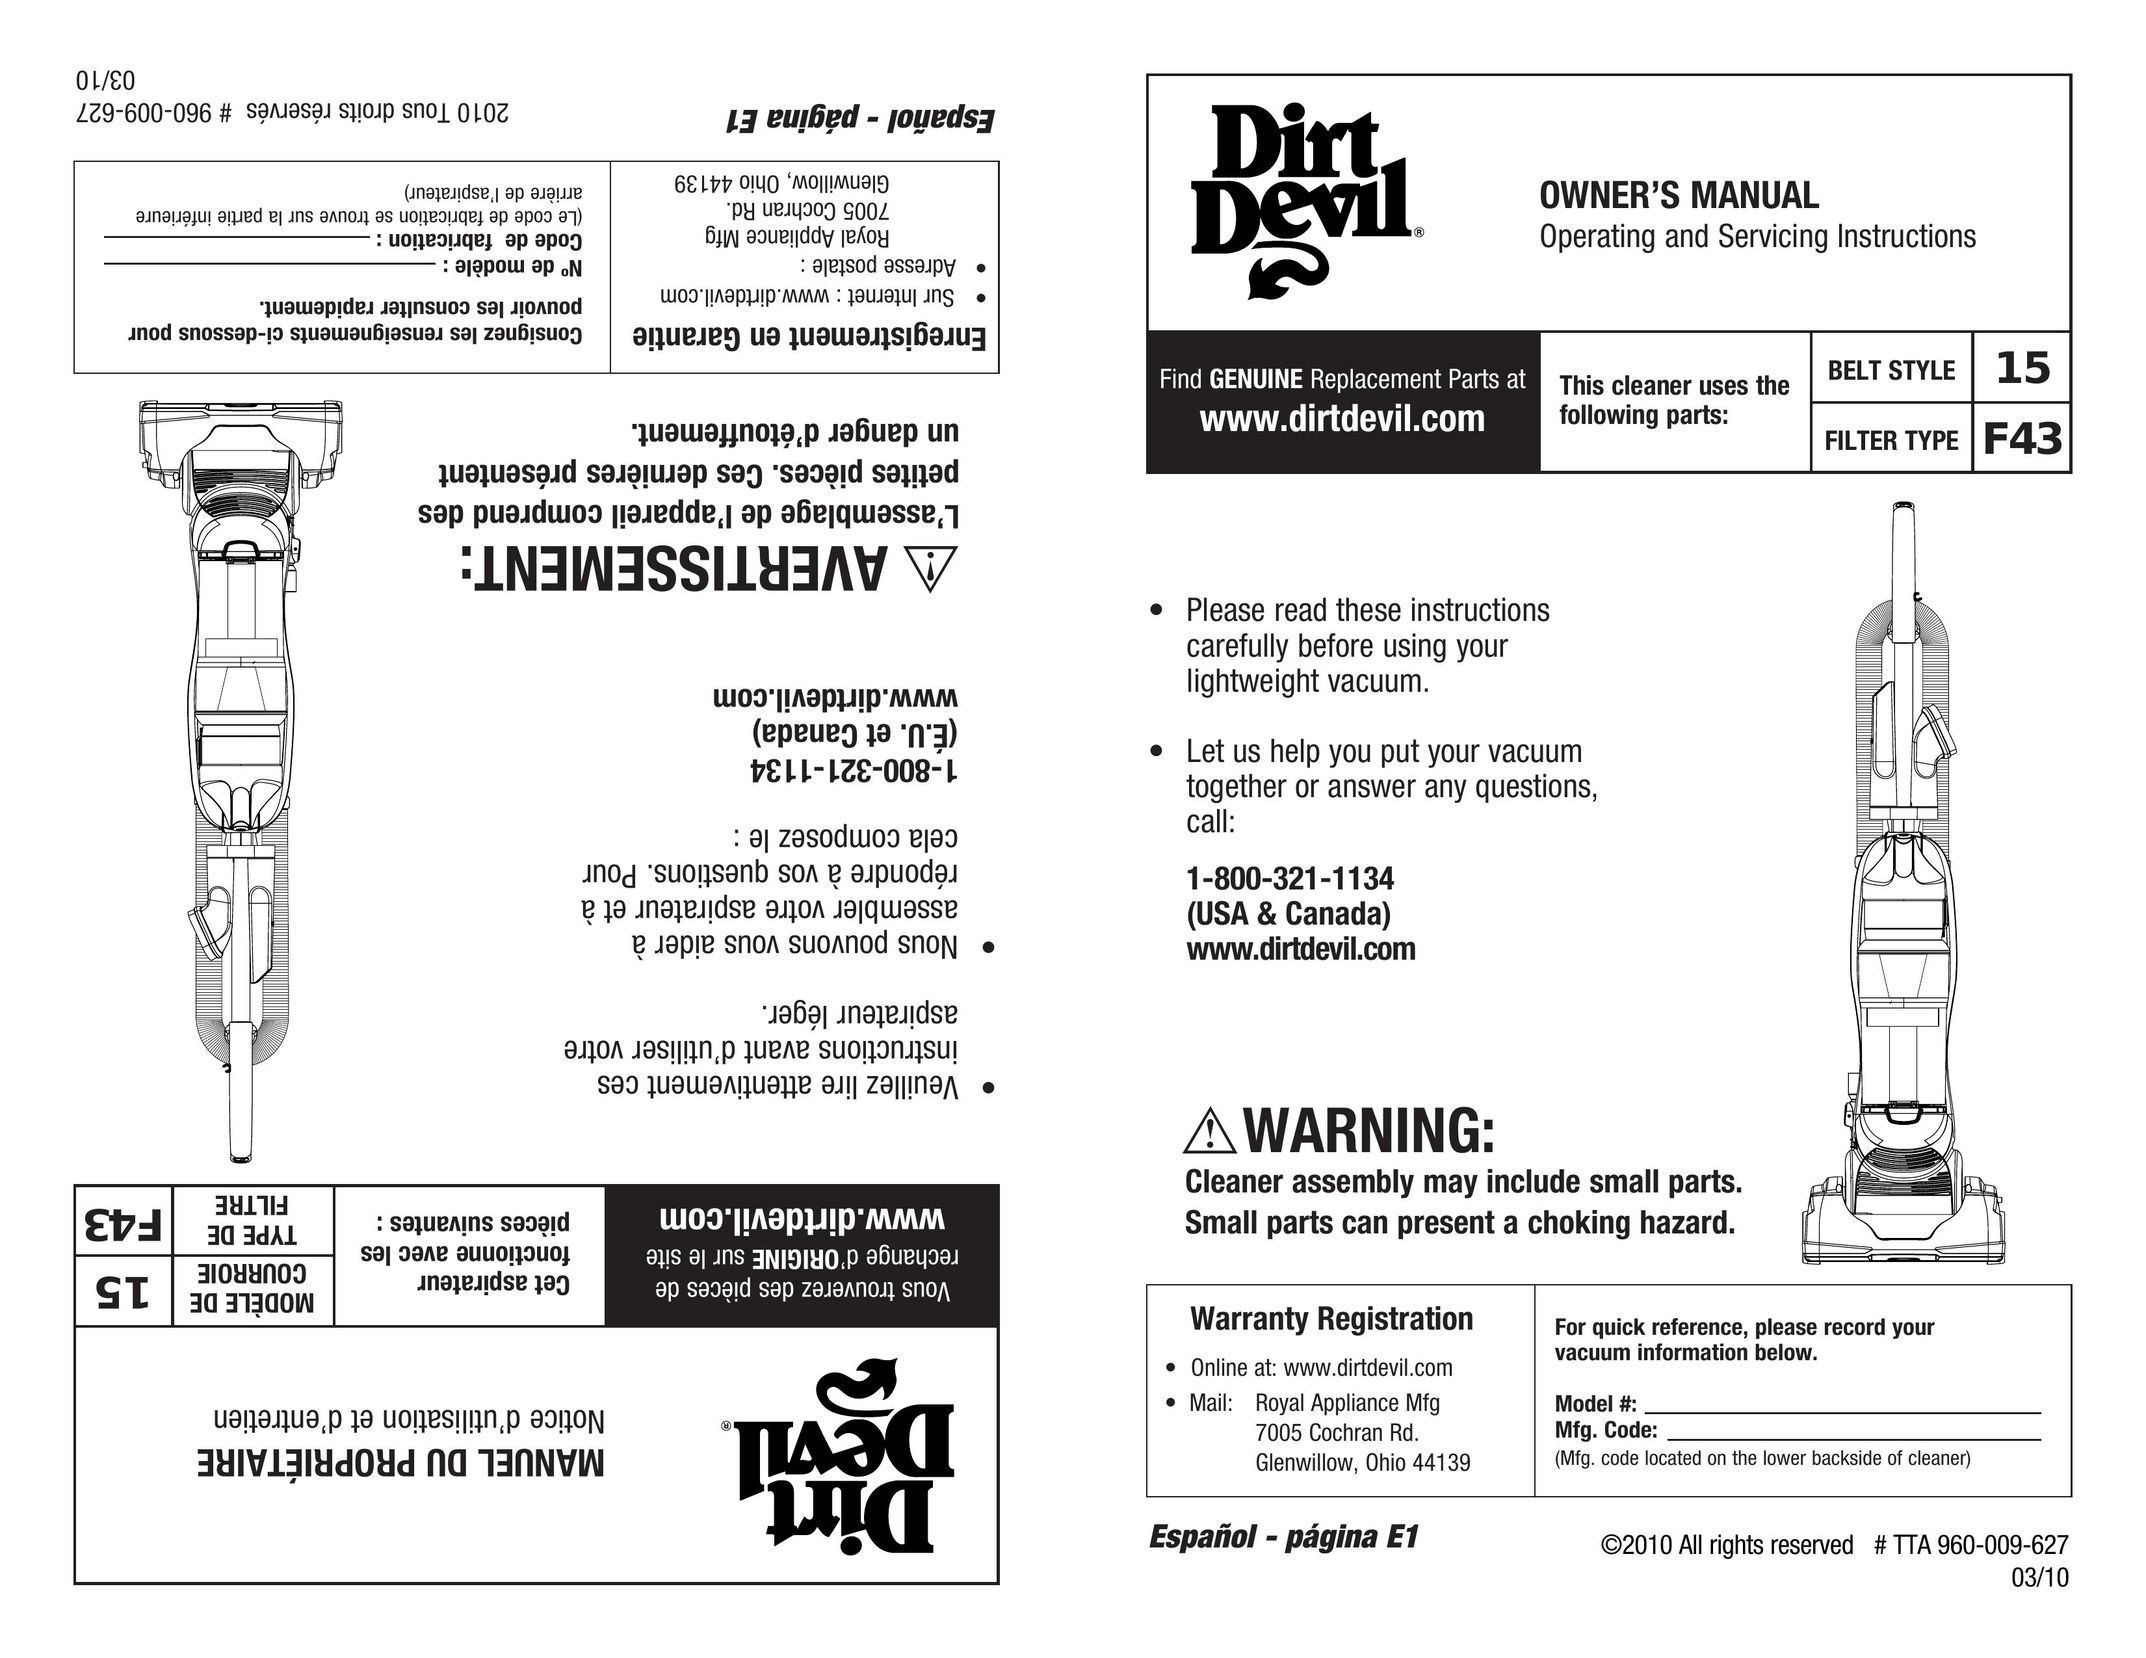 Dirt Devil 960-009-627 Vacuum Cleaner User Manual